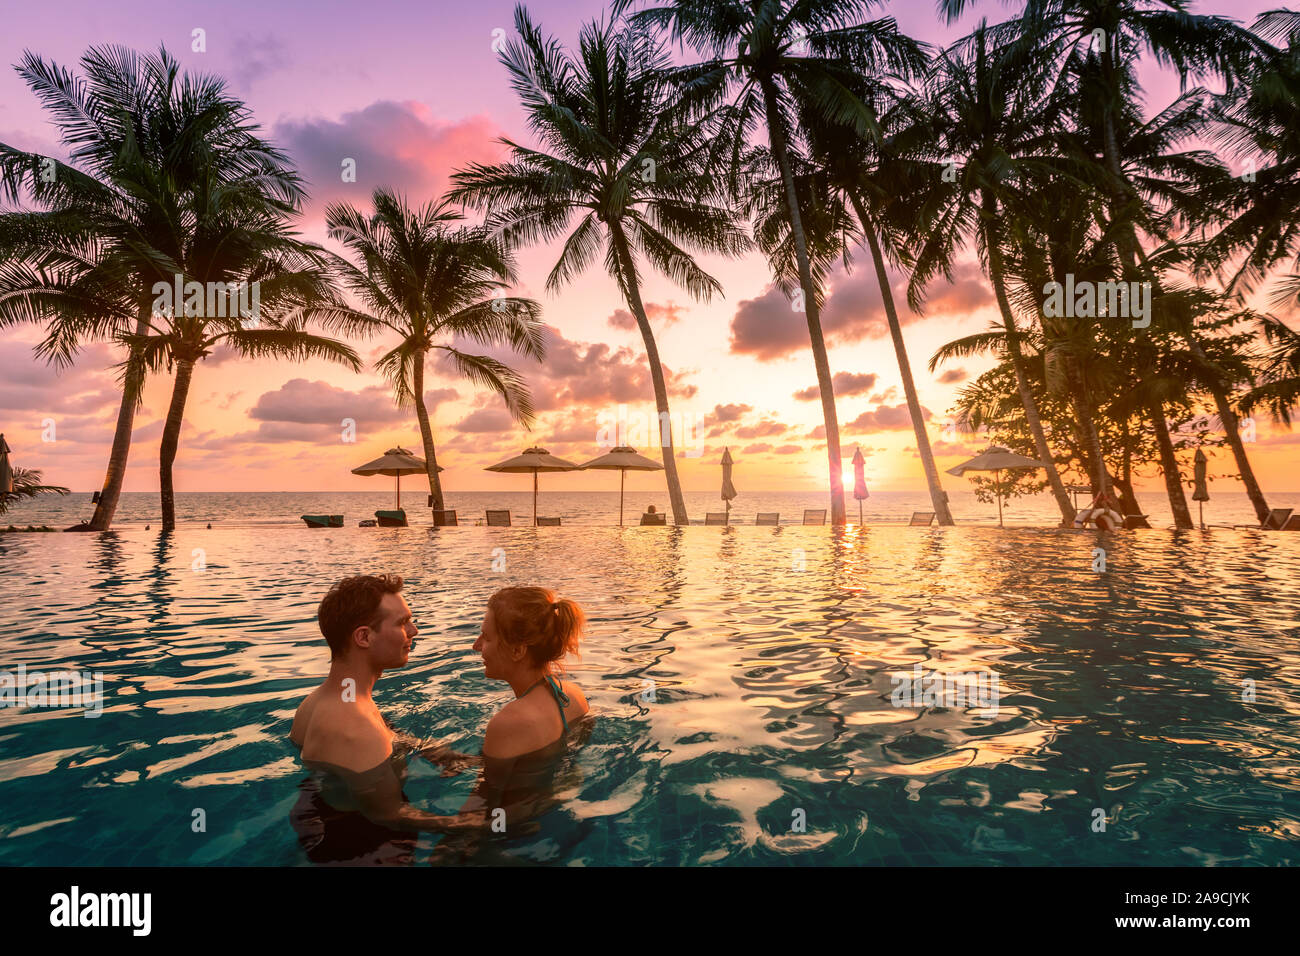 Coppia al beach vacation resort di vacanza rilassante in piscina con scenic paesaggio tropicale al tramonto, estate romantica luna di miele isola destinat Foto Stock